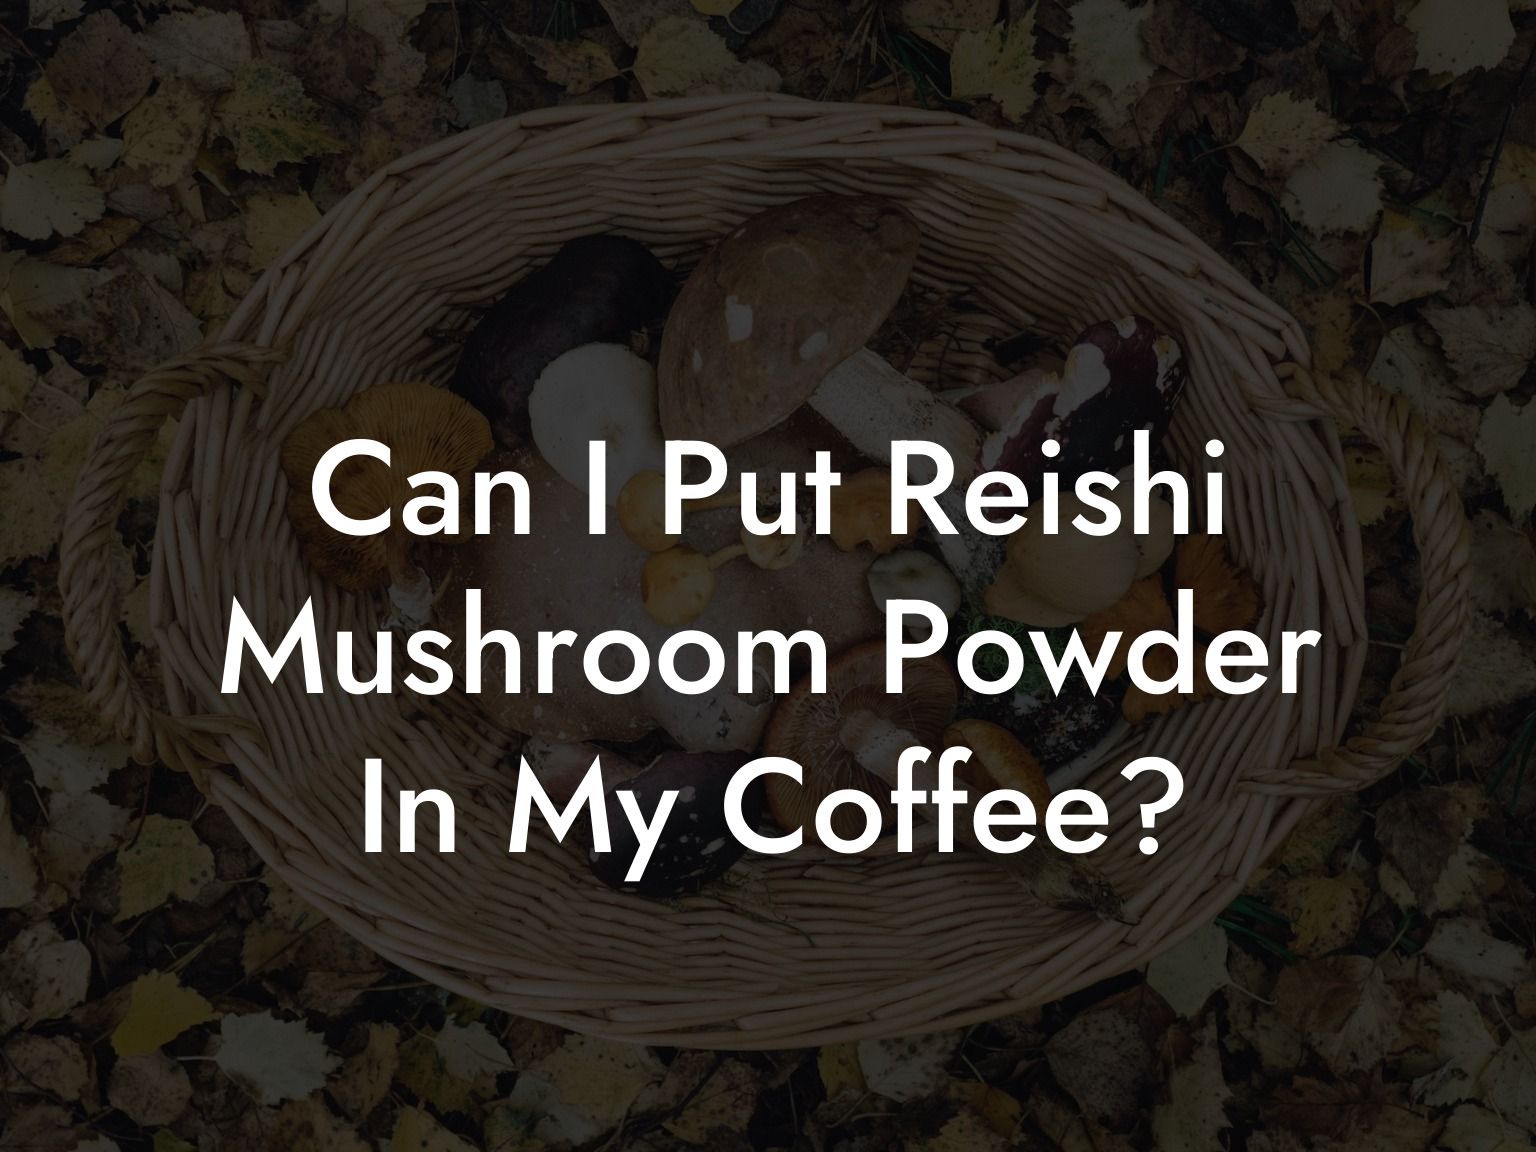 Can I Put Reishi Mushroom Powder In My Coffee?